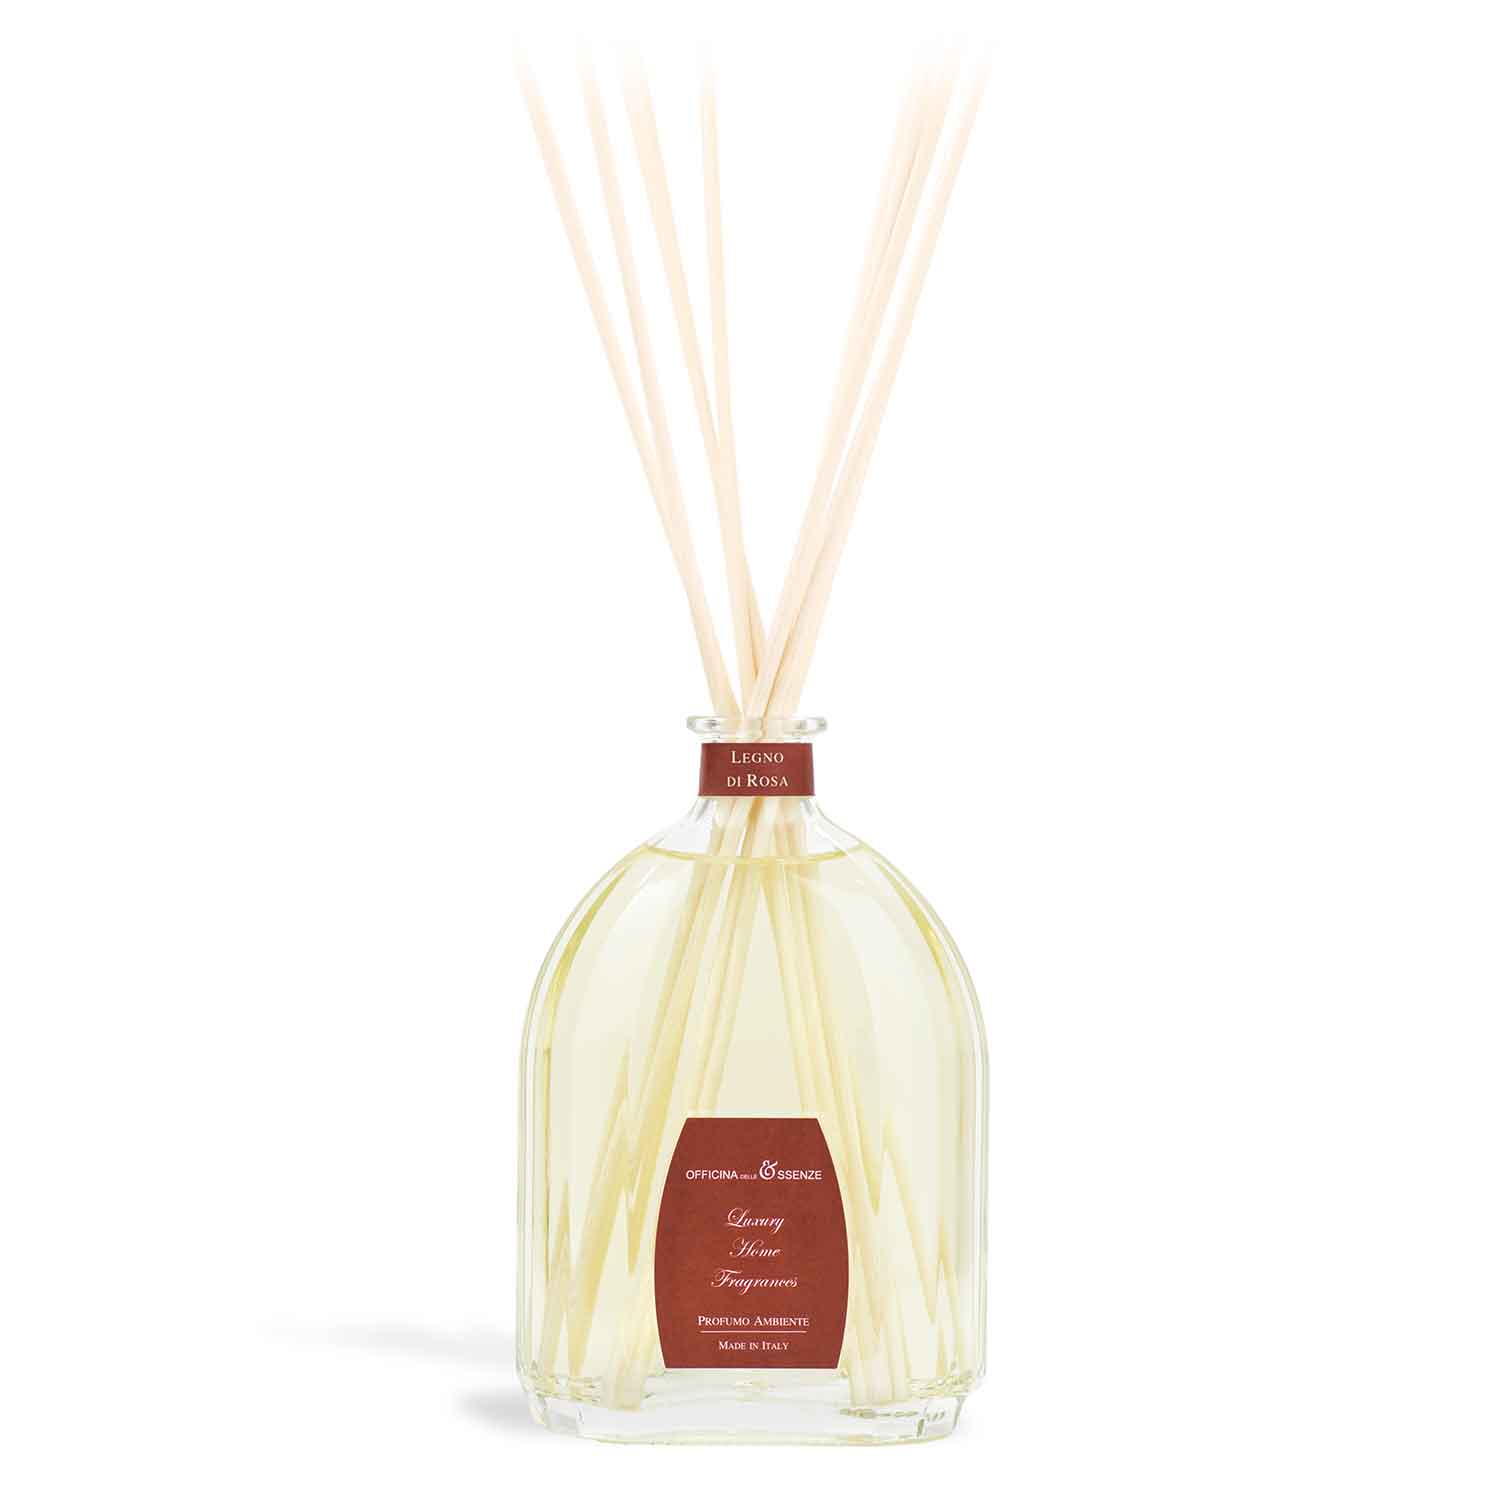 Legno di Rosa - Home fragrance diffuser with essential oils, 500 ml